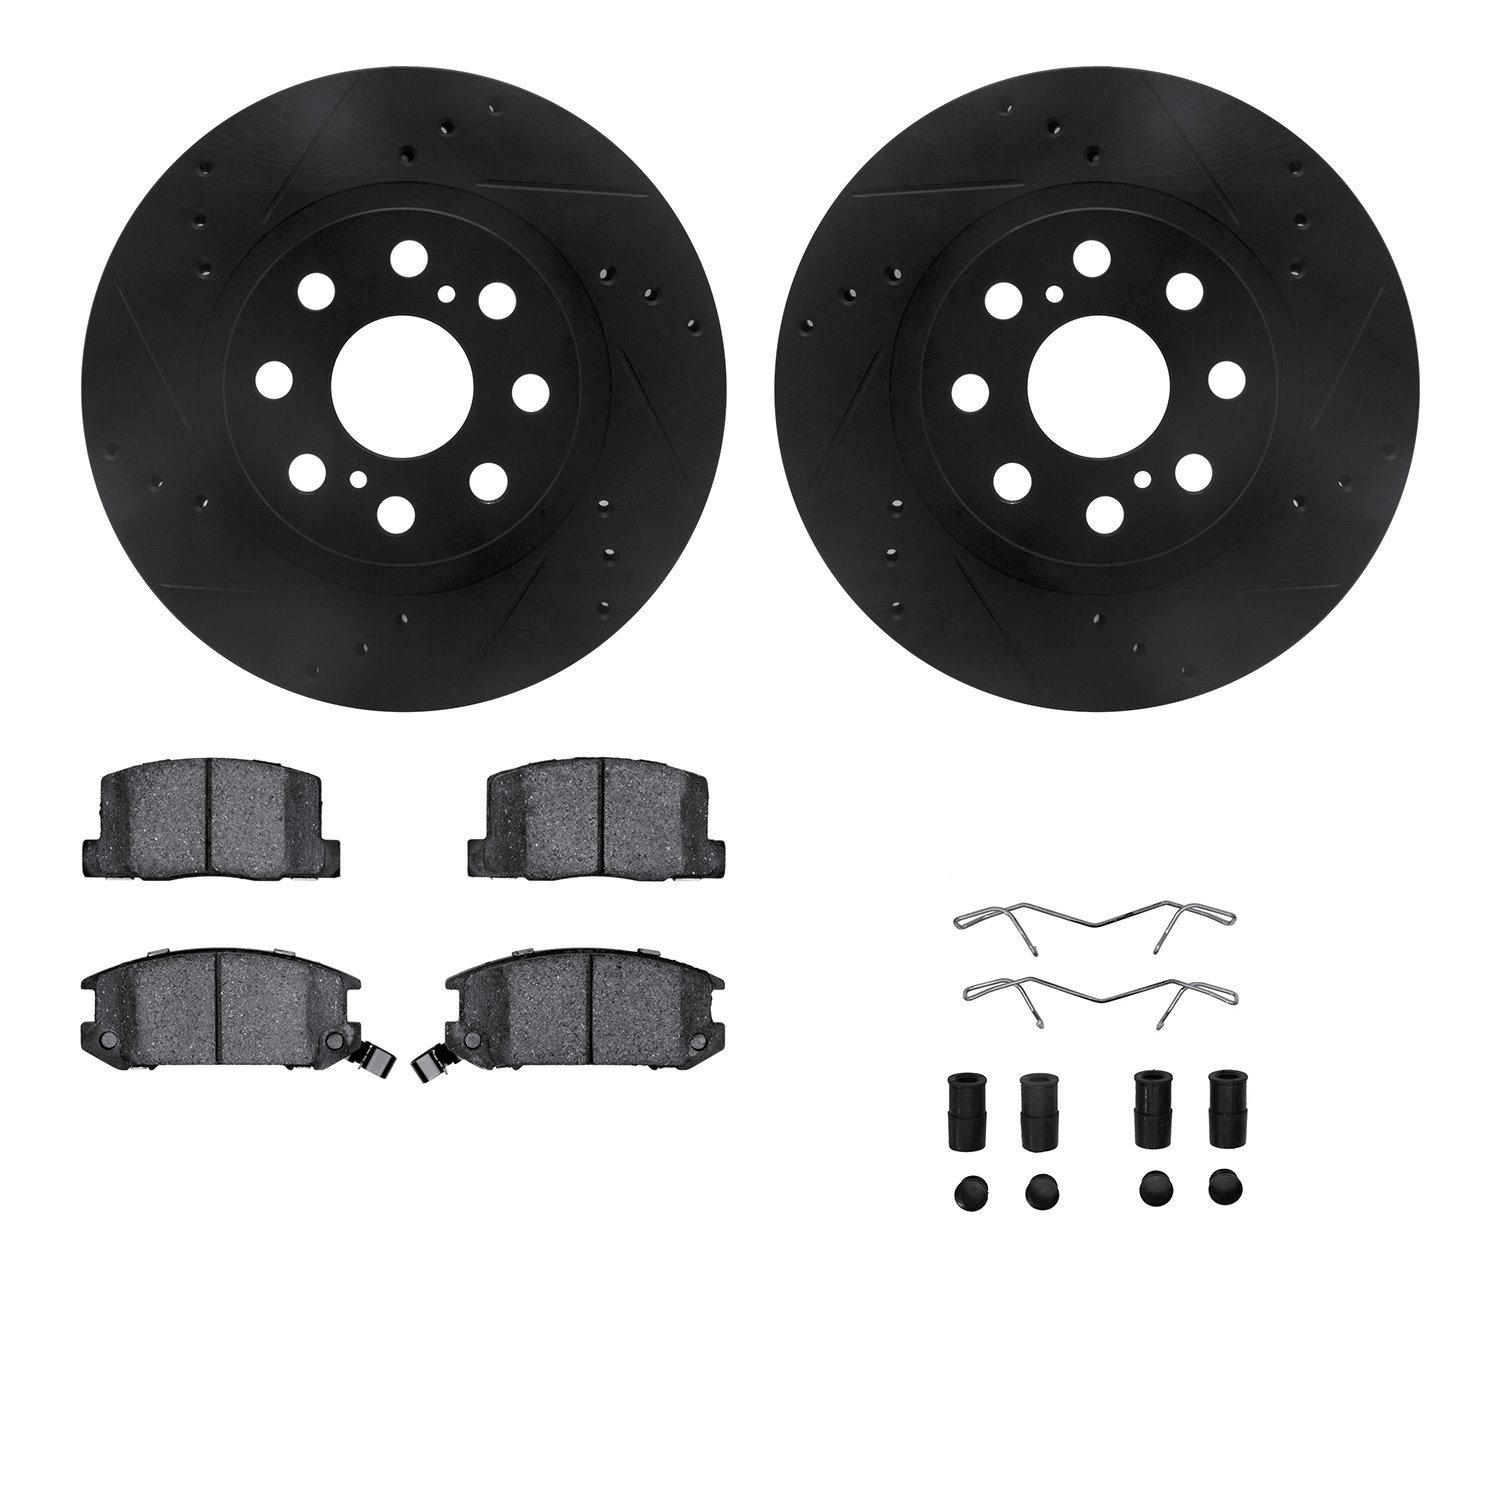 8312-76110 Drilled/Slotted Brake Rotors with 3000-Series Ceramic Brake Pads Kit & Hardware [Black], 2000-2005 Lexus/Toyota/Scion